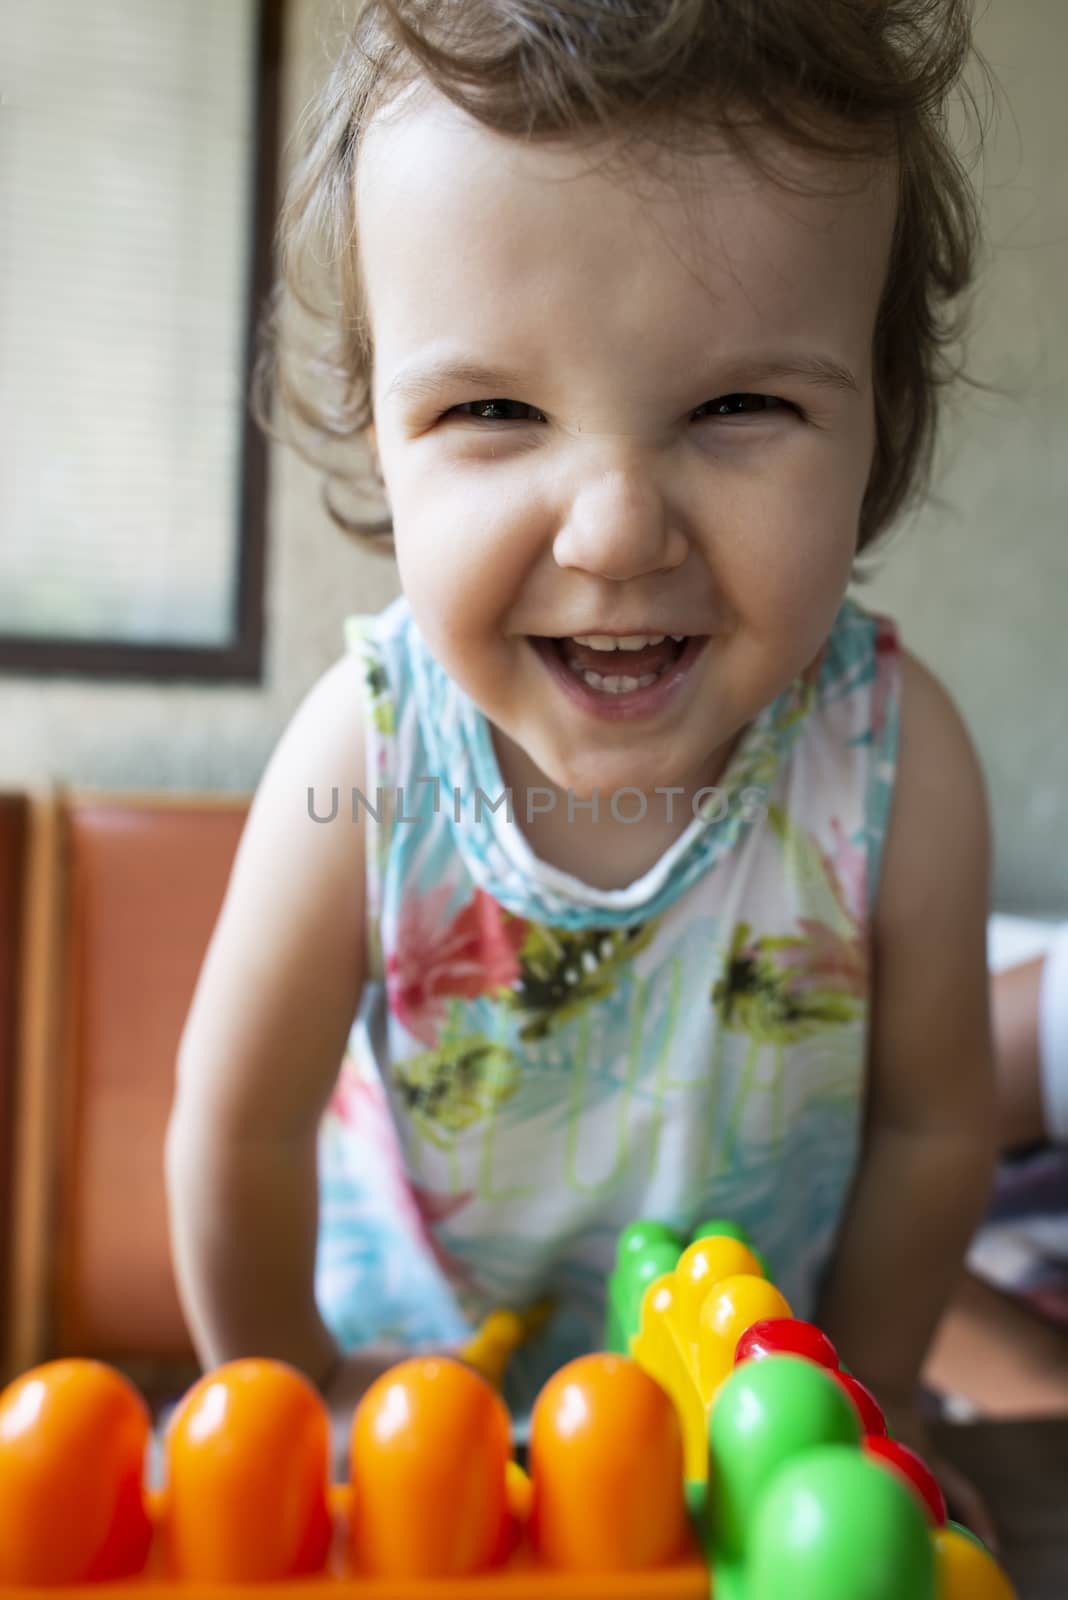 Smiling little girl. Blocks toy